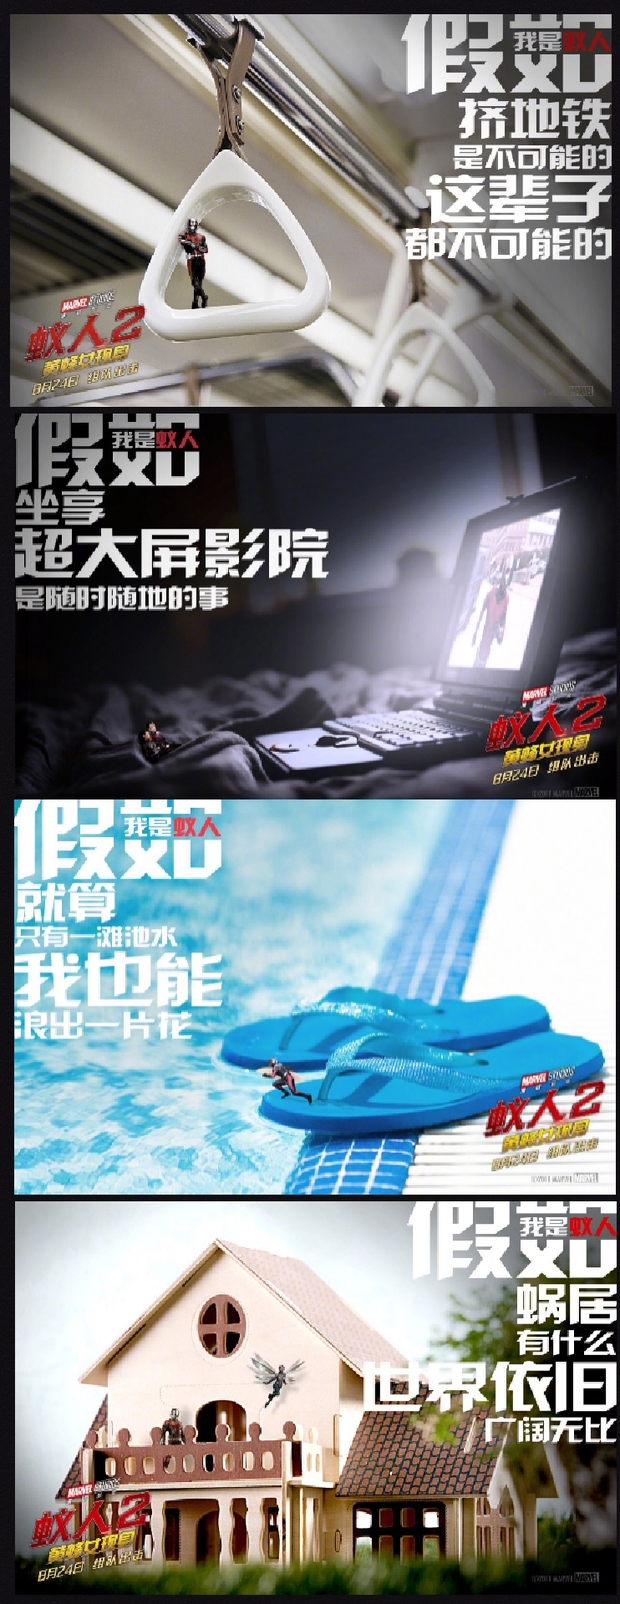  Nuevos posters japoneses para Ant Man y la avispa